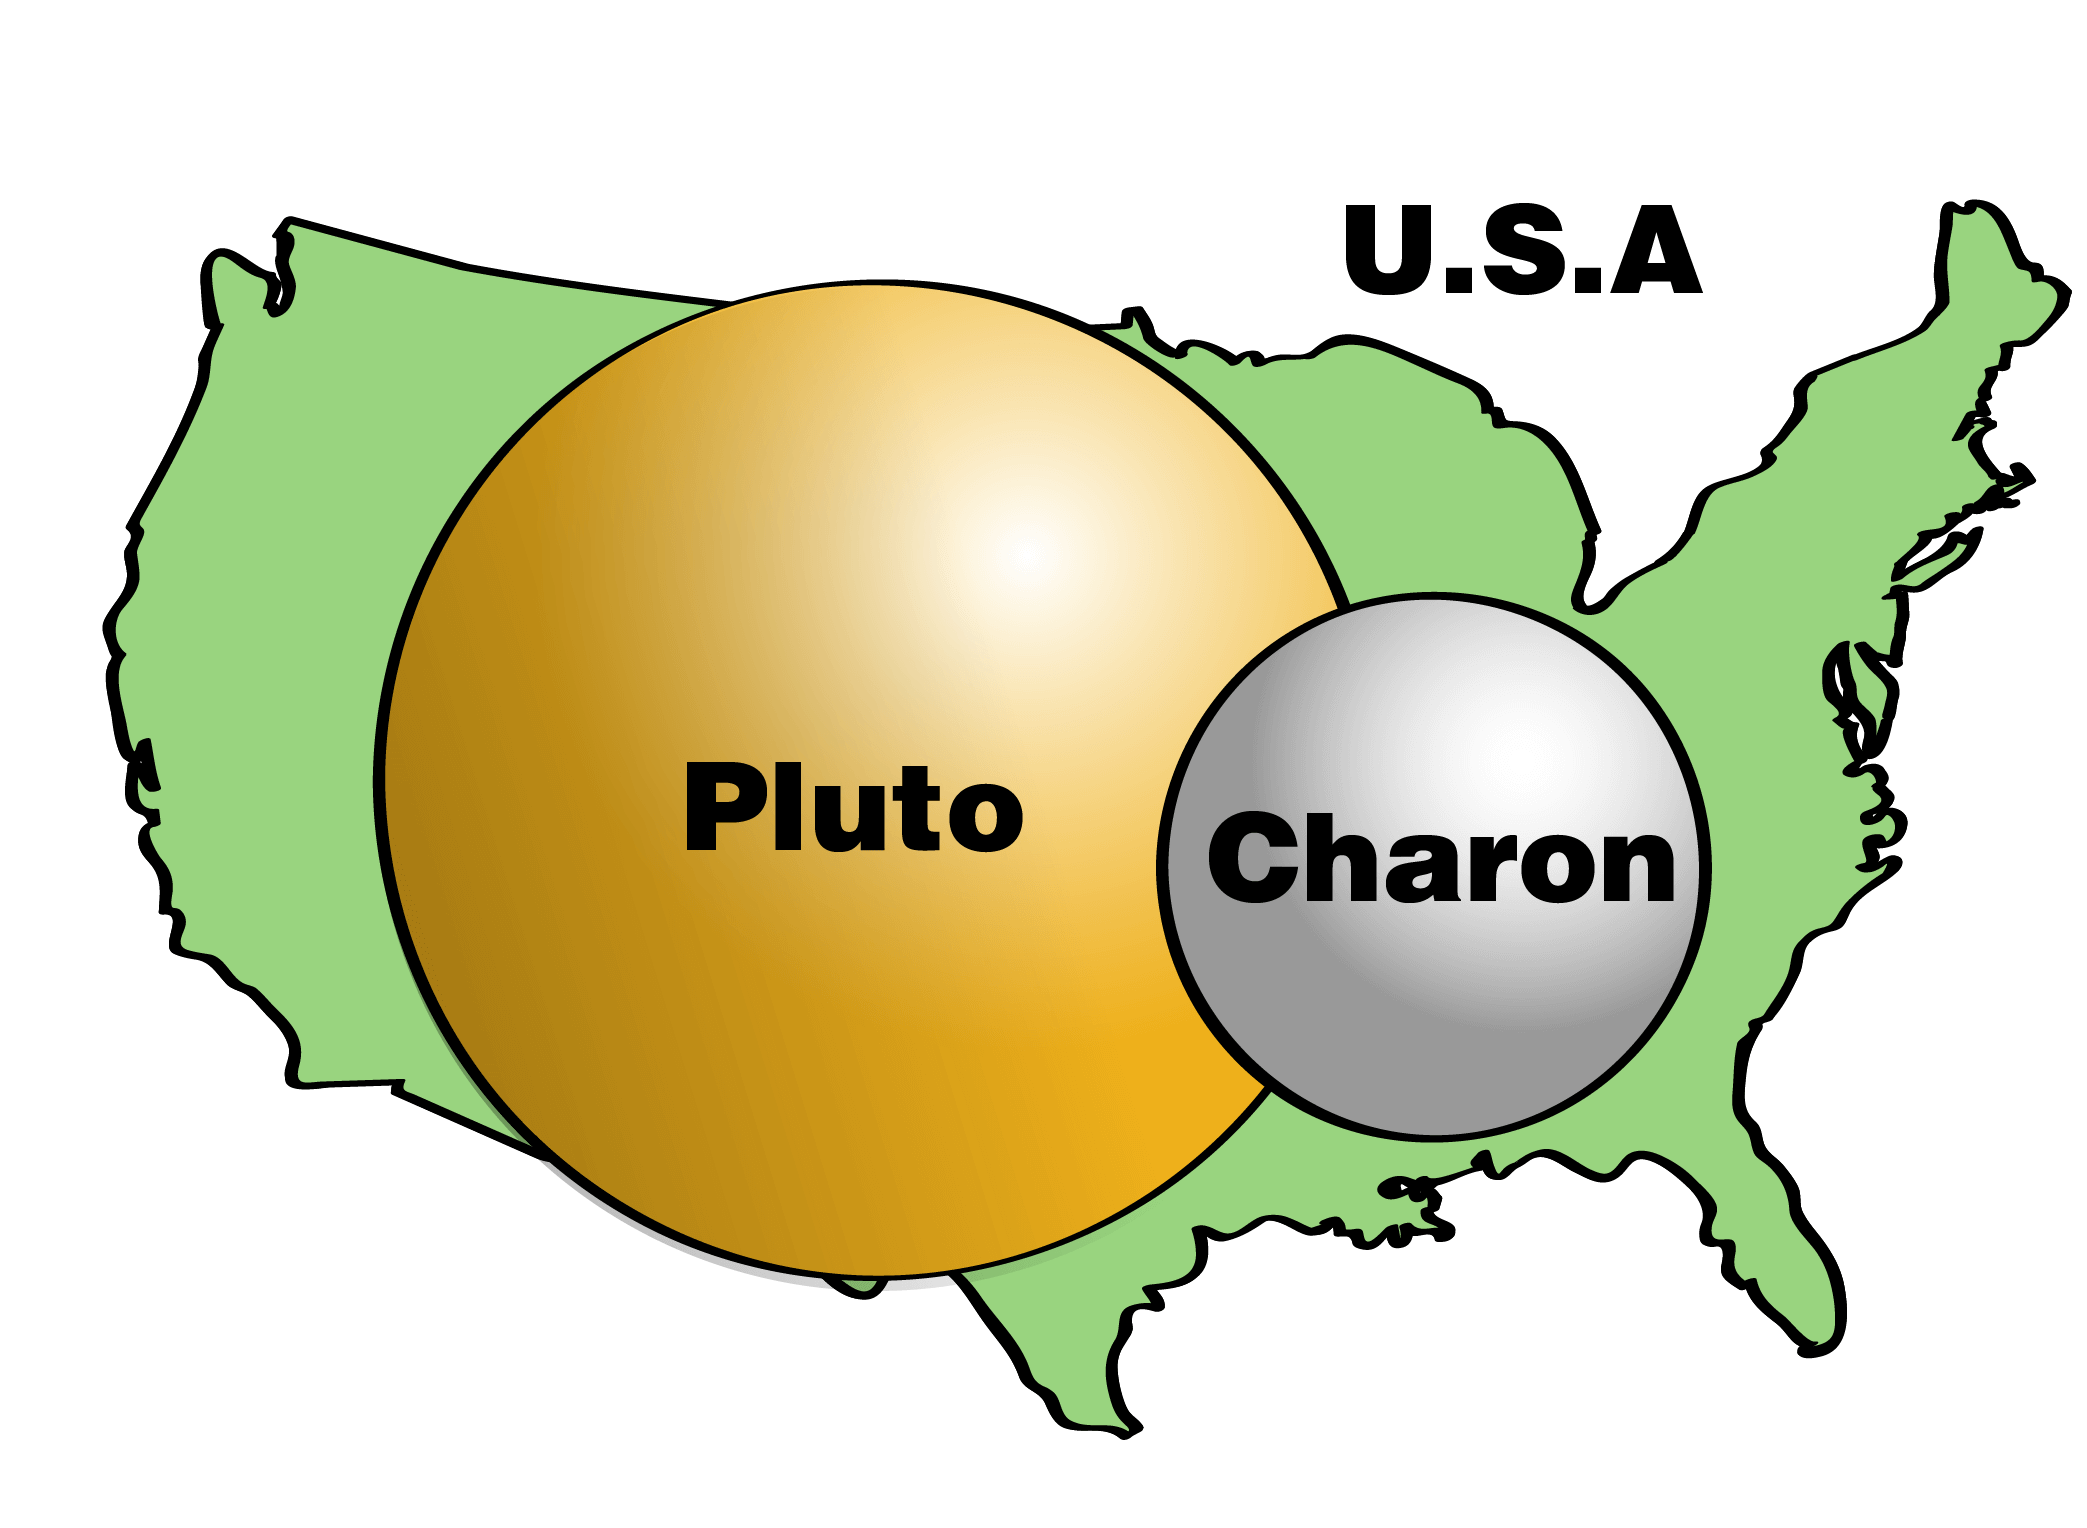 Los tamaños de Plutón y Caronte en comparación con los Estados Unidos. Plutón tiene sólo aproximadamente la mitad del ancho de Estados Unidos. Caronte tiene aproximadamente la mitad del tamaño de Plutón.